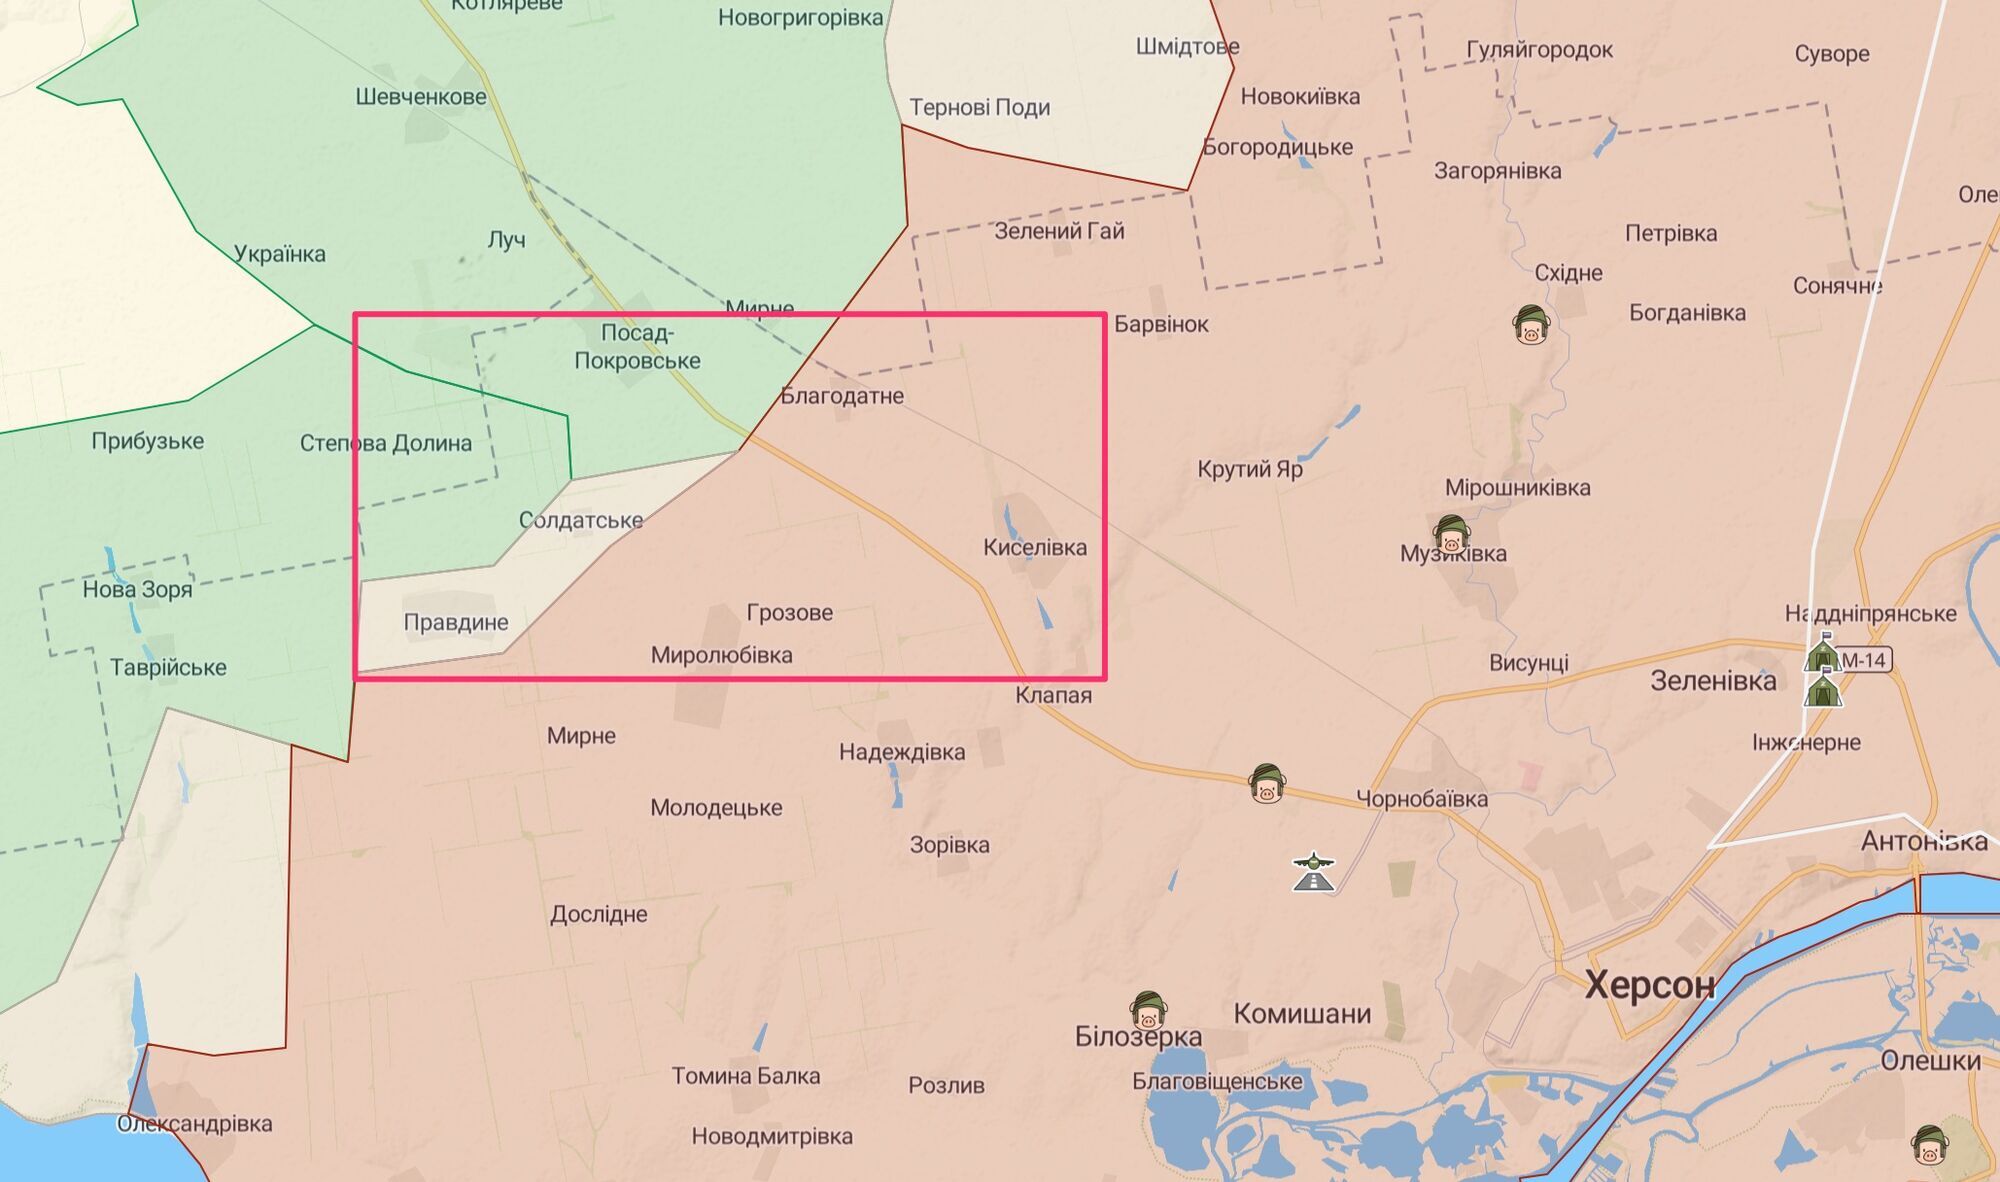 20-я МСД оккупантов действует в районе Посад-Покровского.